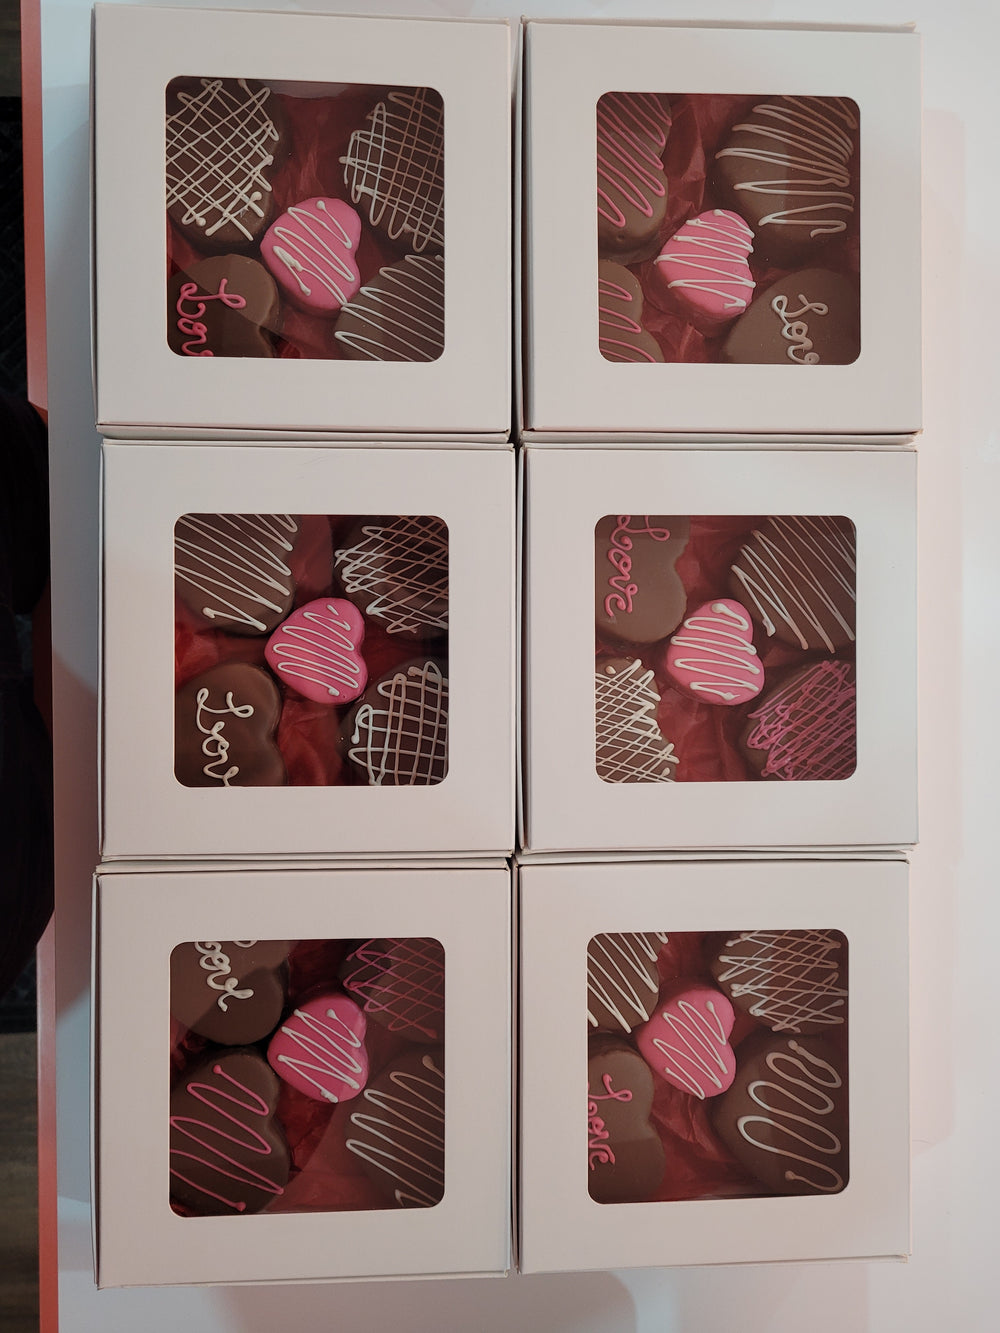 Roll Cake Heart Chocolate Paper Bag with 5 units / Caixa de coracao de chocolate com 5 unidades